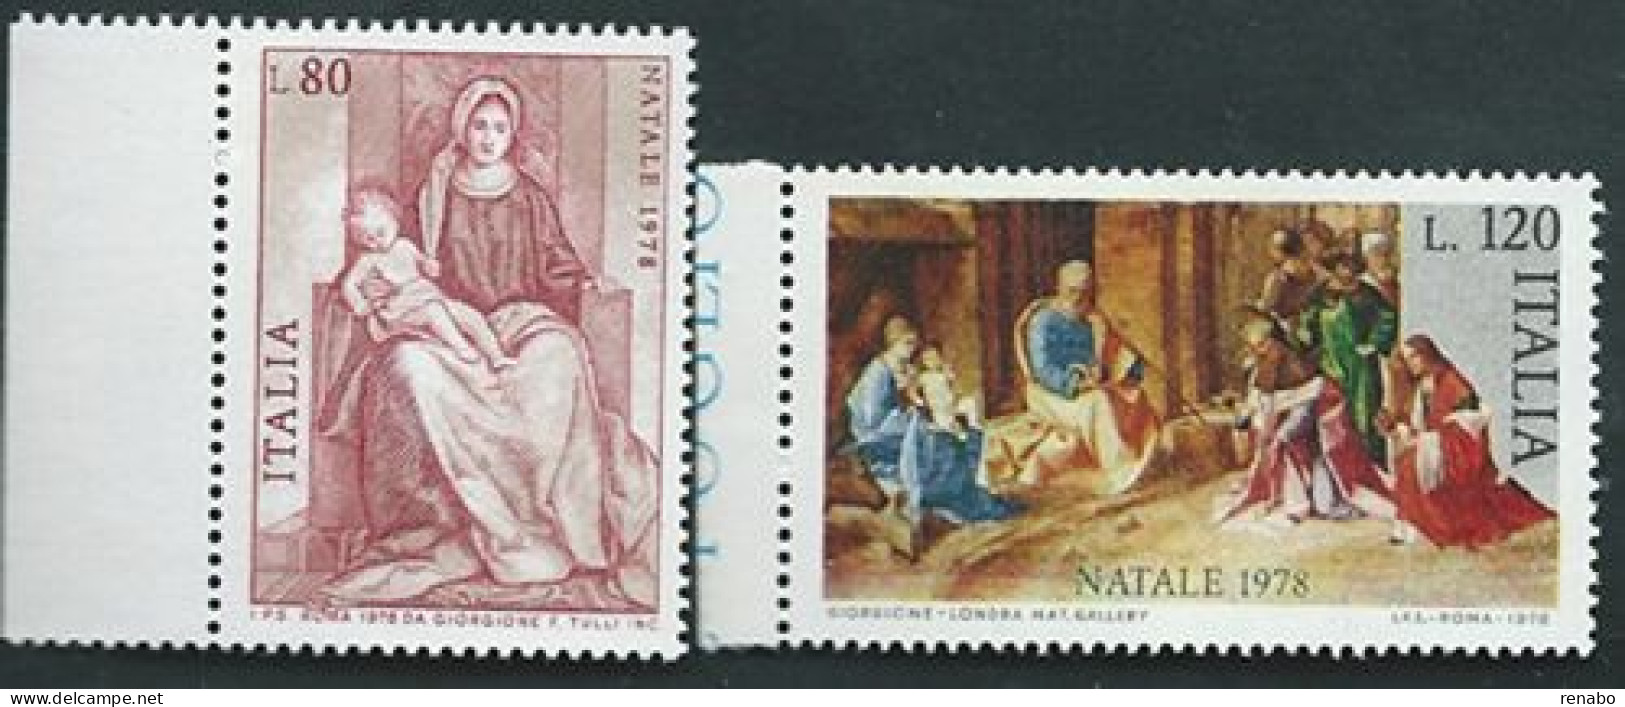 Italia 1978; Natale, Serie Completa; Pitture Del Giorgione: Bordo Sinistro. - 1971-80: Mint/hinged